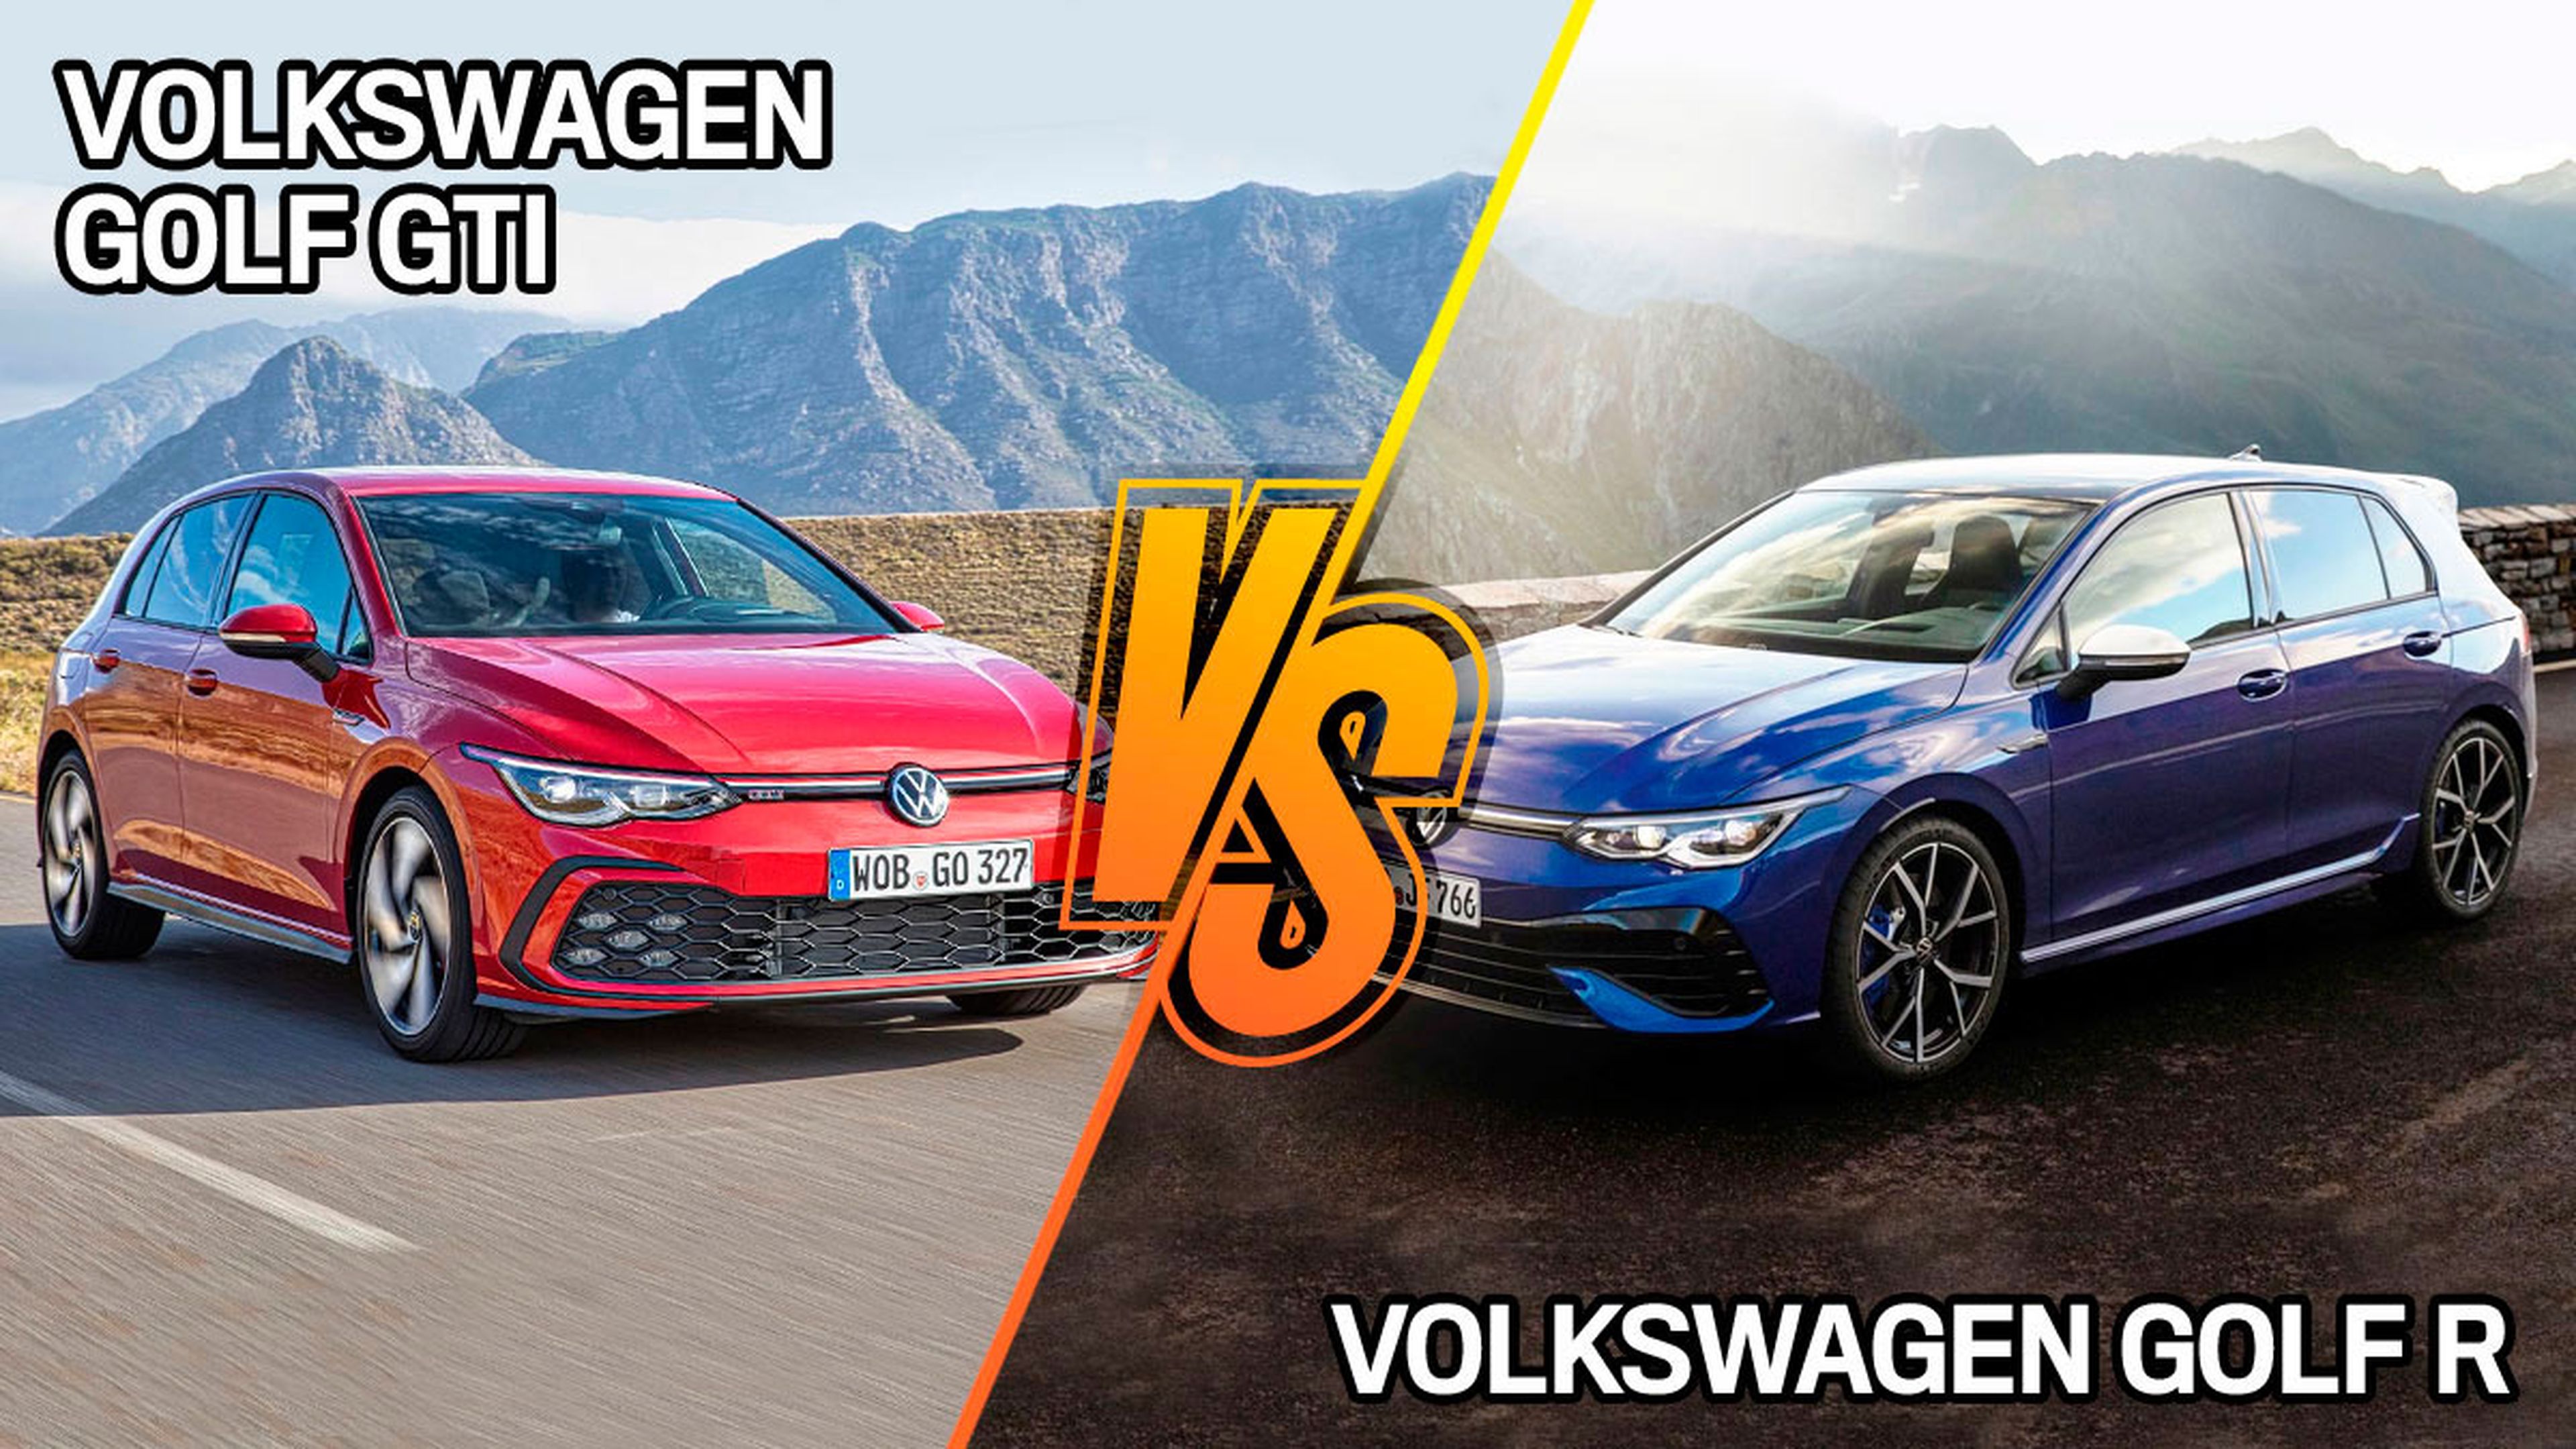 Volkswagen Golf R 2021 o Golf GTI 2020, ¿cuál es más recomendable?